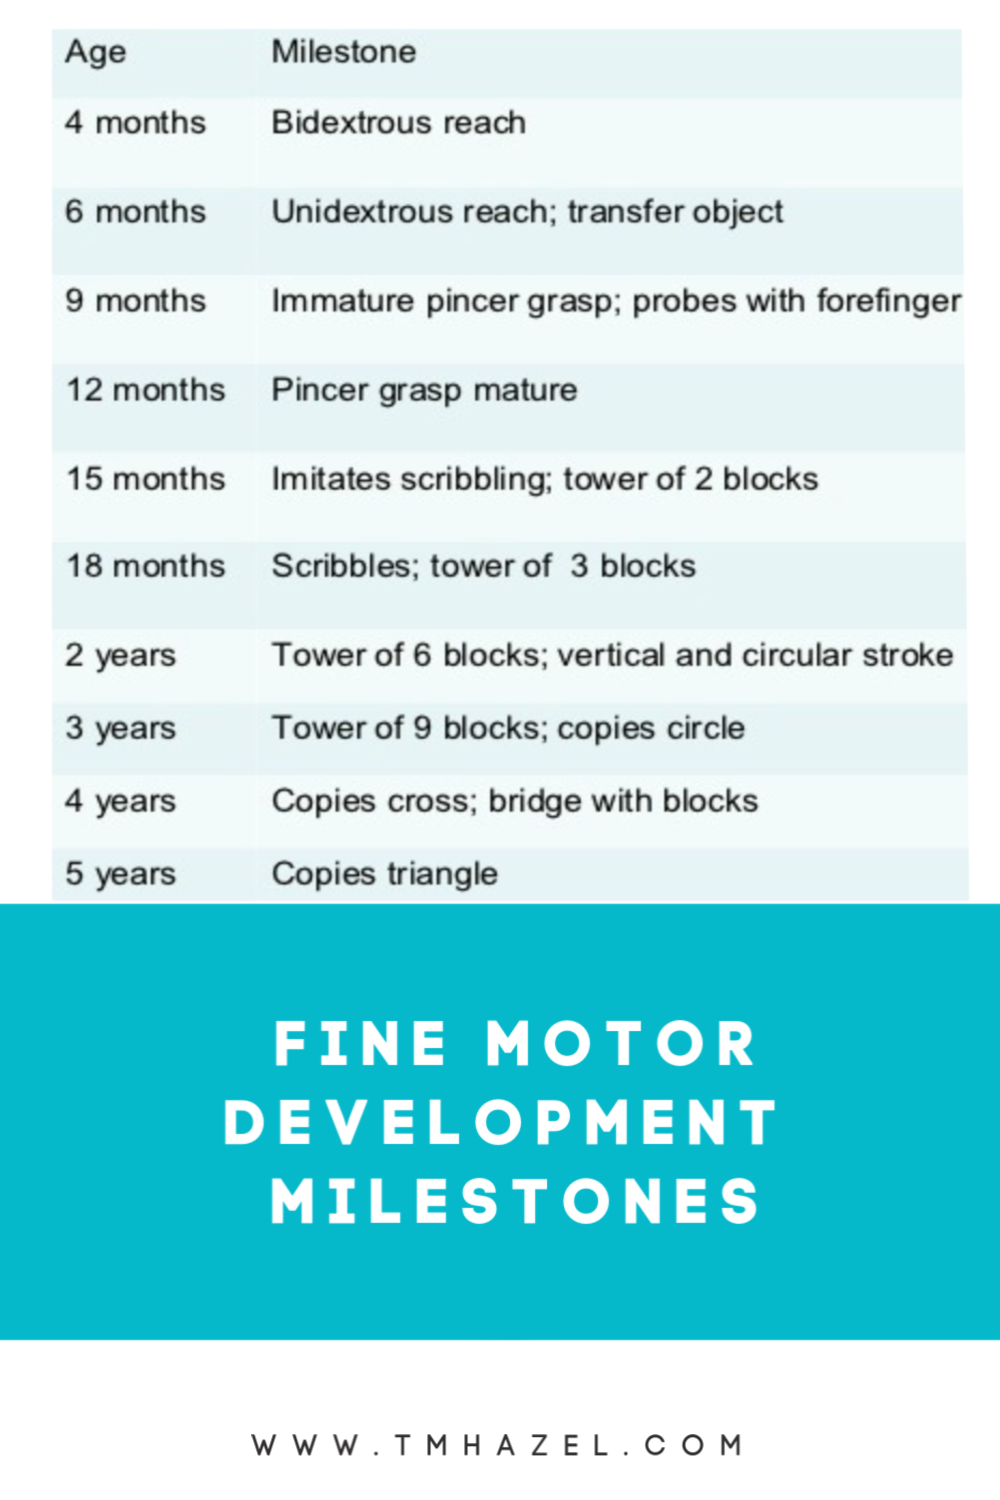 Fine Motor skills development milestones